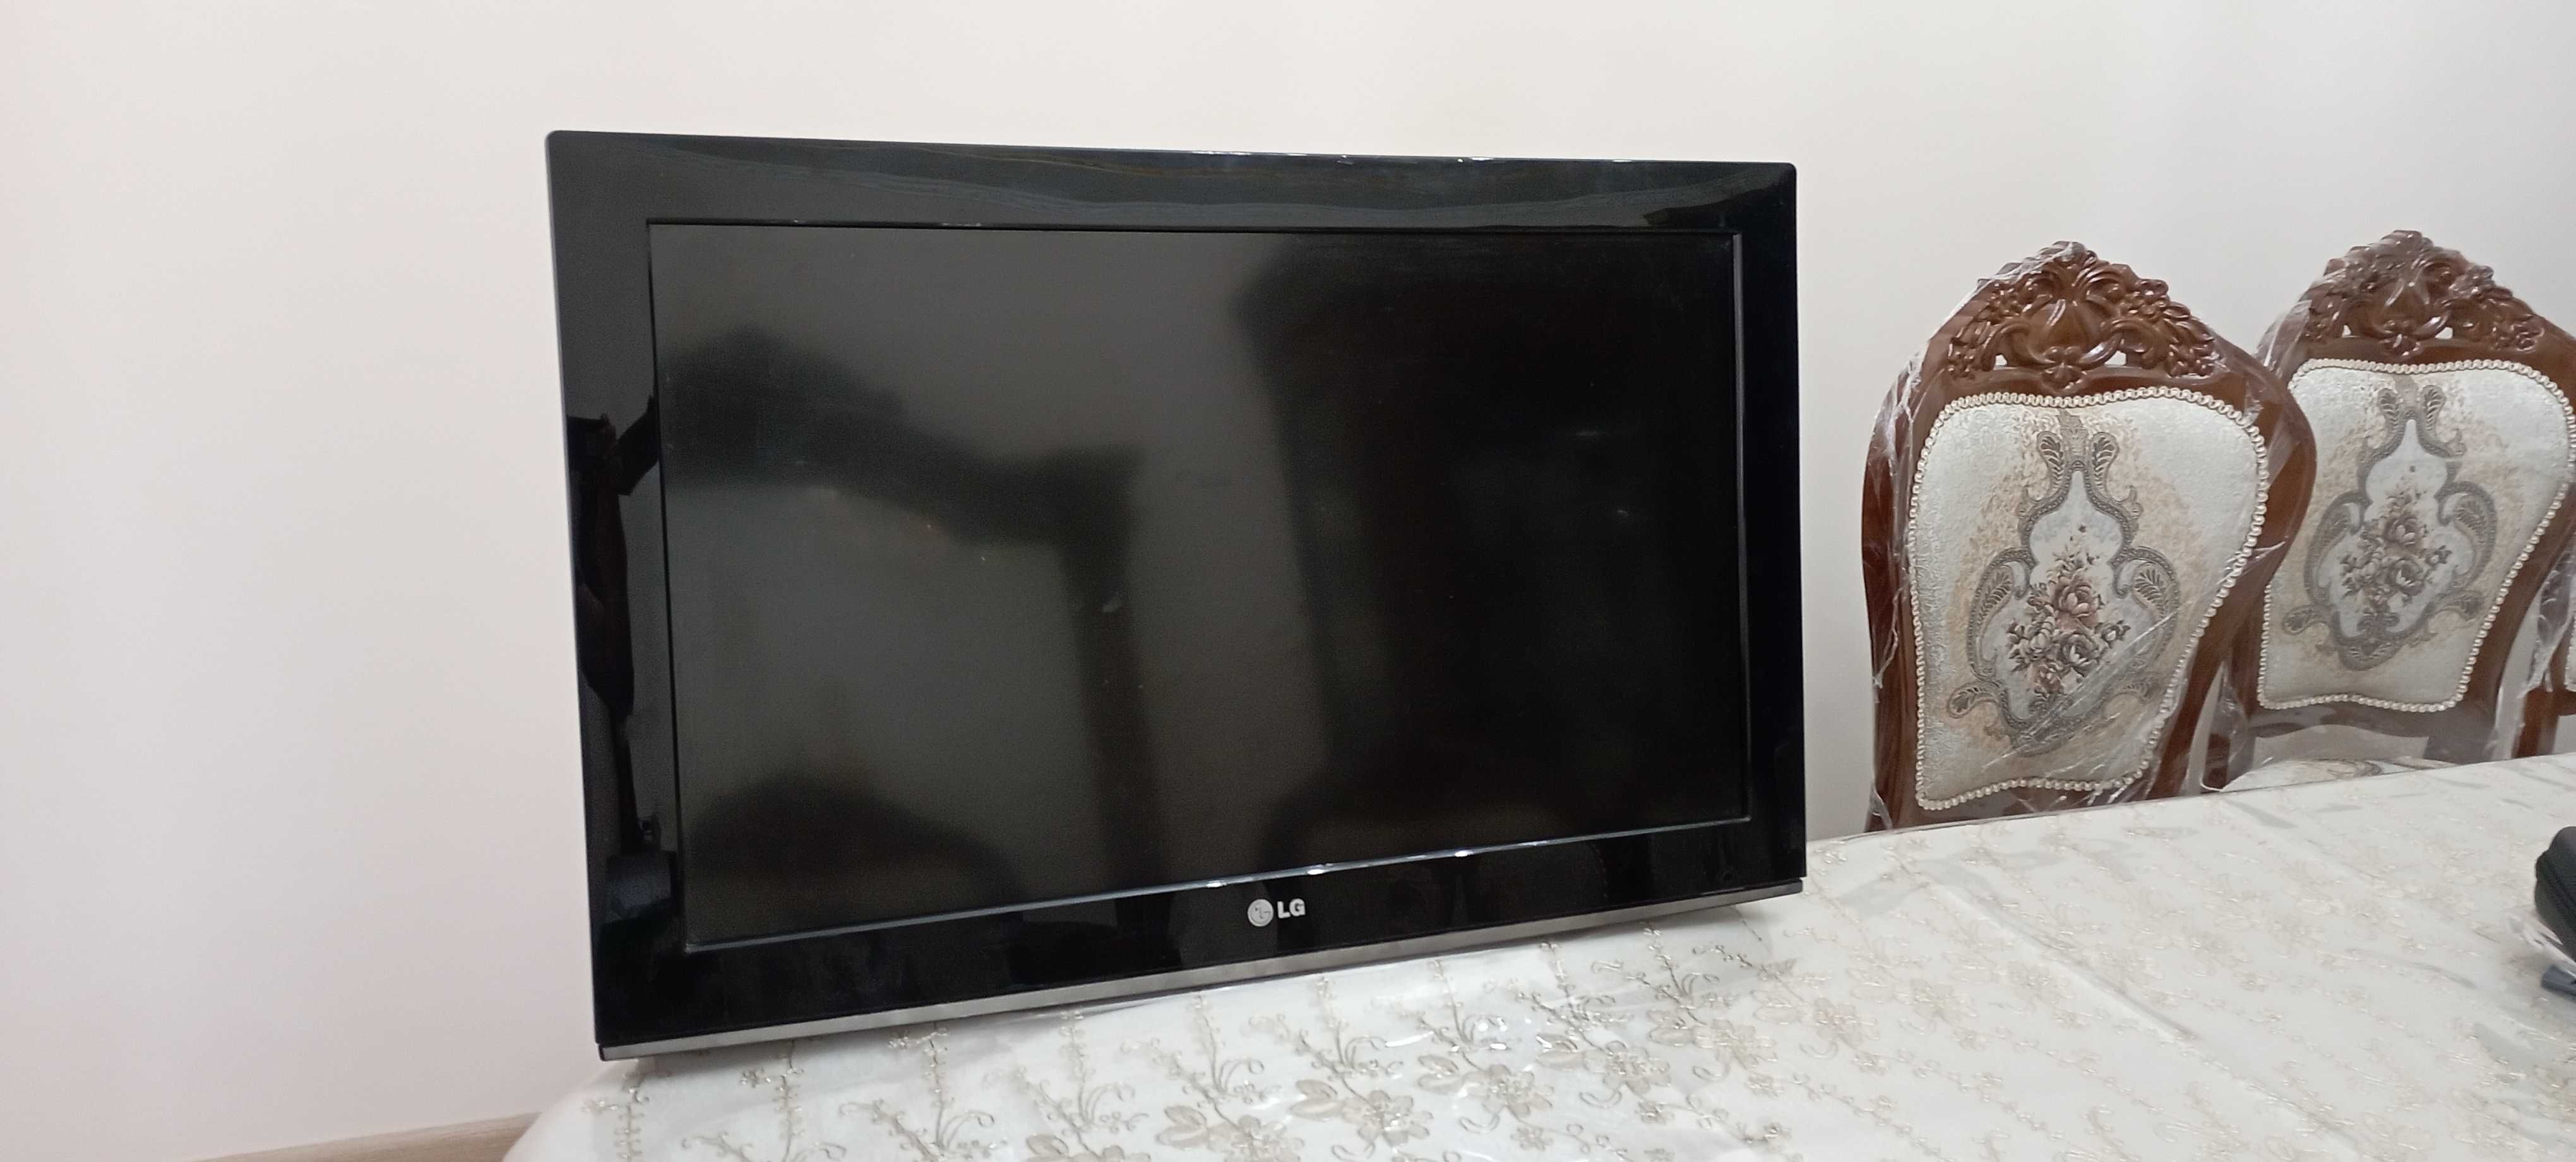 Продается телевизор LG.